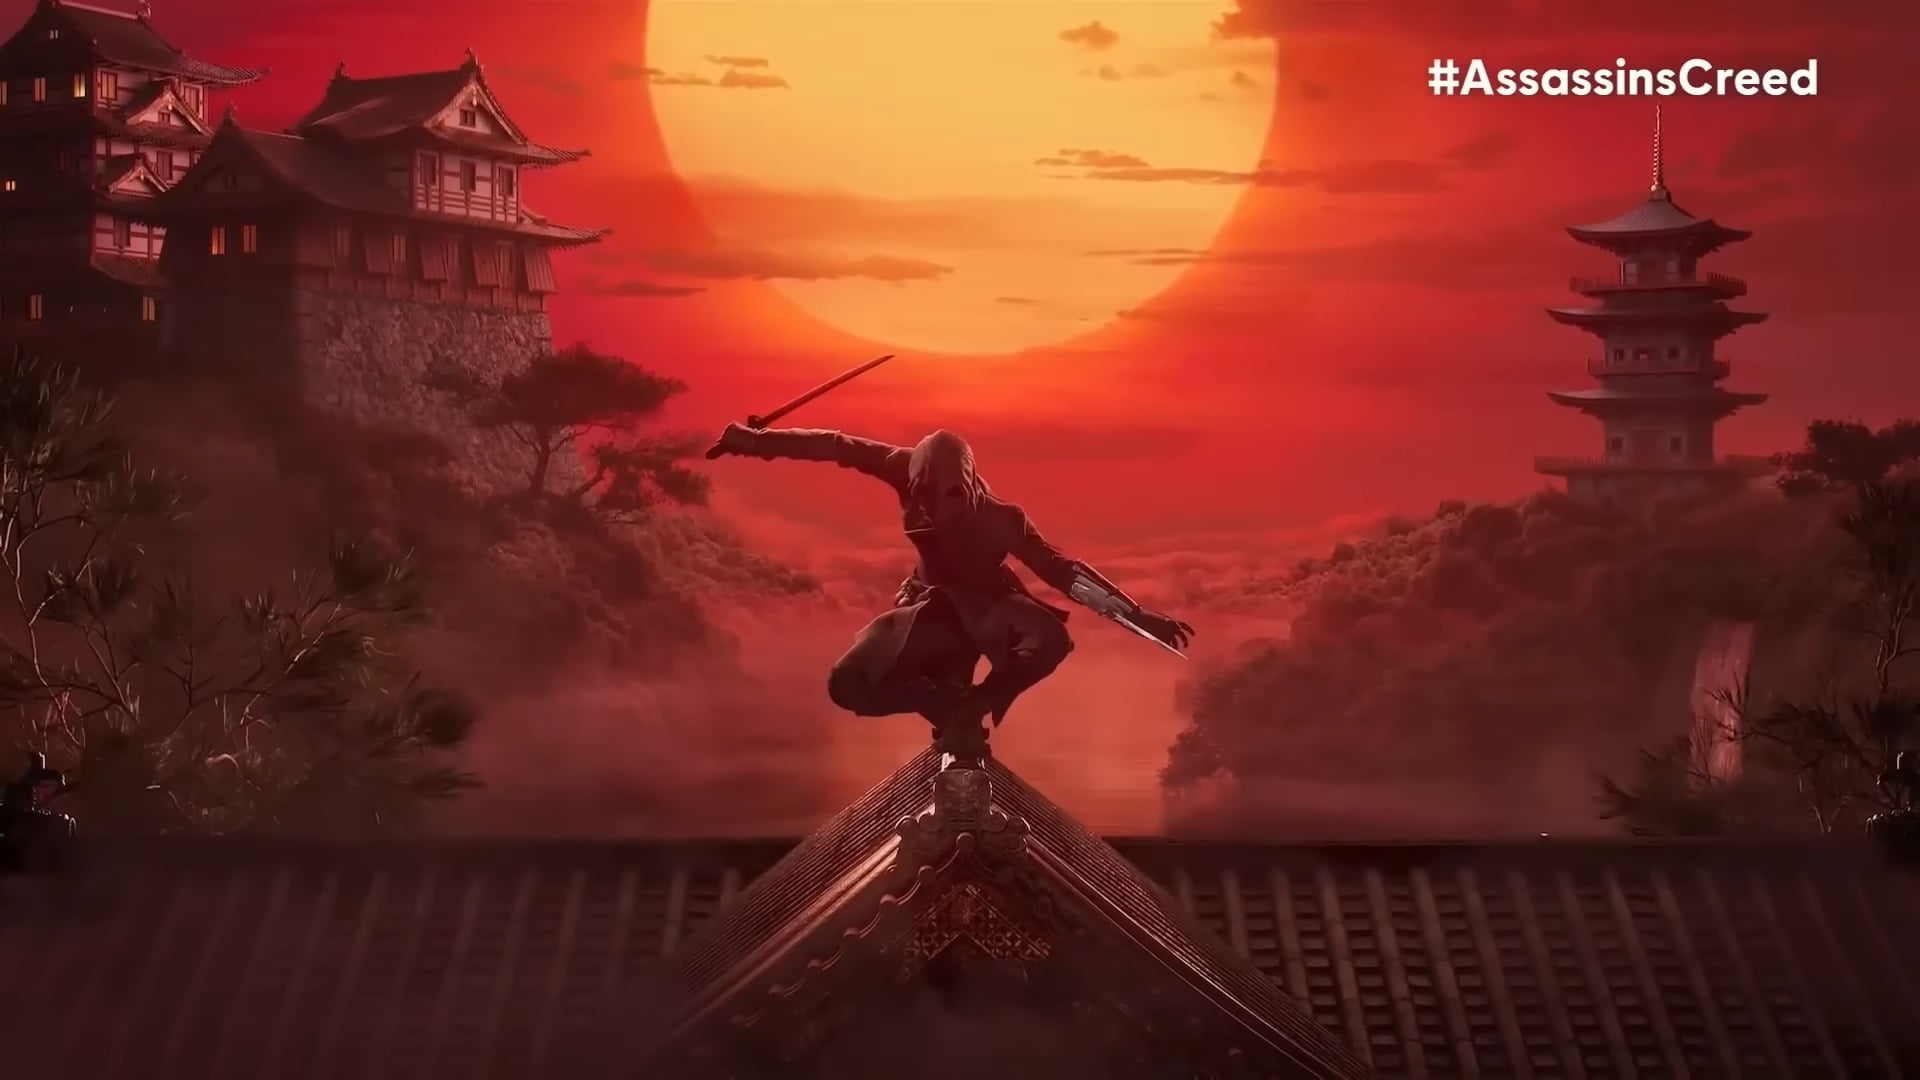 Postać w stroju ninja z mieczem na dachu w stylu japońskim na tle zachodzącego słońca i tradycyjnych japońskich budynków z hashtagiem #AssassinsCreed.